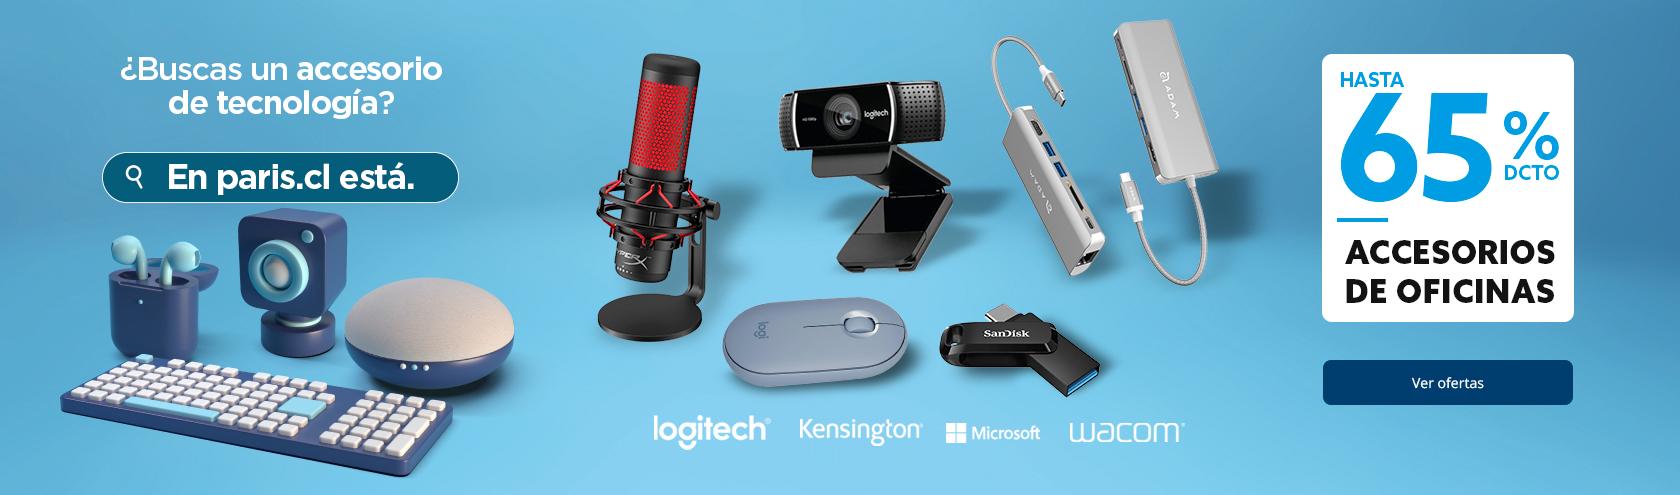 Alexa Echo Dot 3ra Generación, COMPLEMENTOS TECNOLÓGICOS, COMPLEMENTOS  TECNOLÓGICOS, ACCESORIOS, TECNOLOGÍA, ELECTRONICA